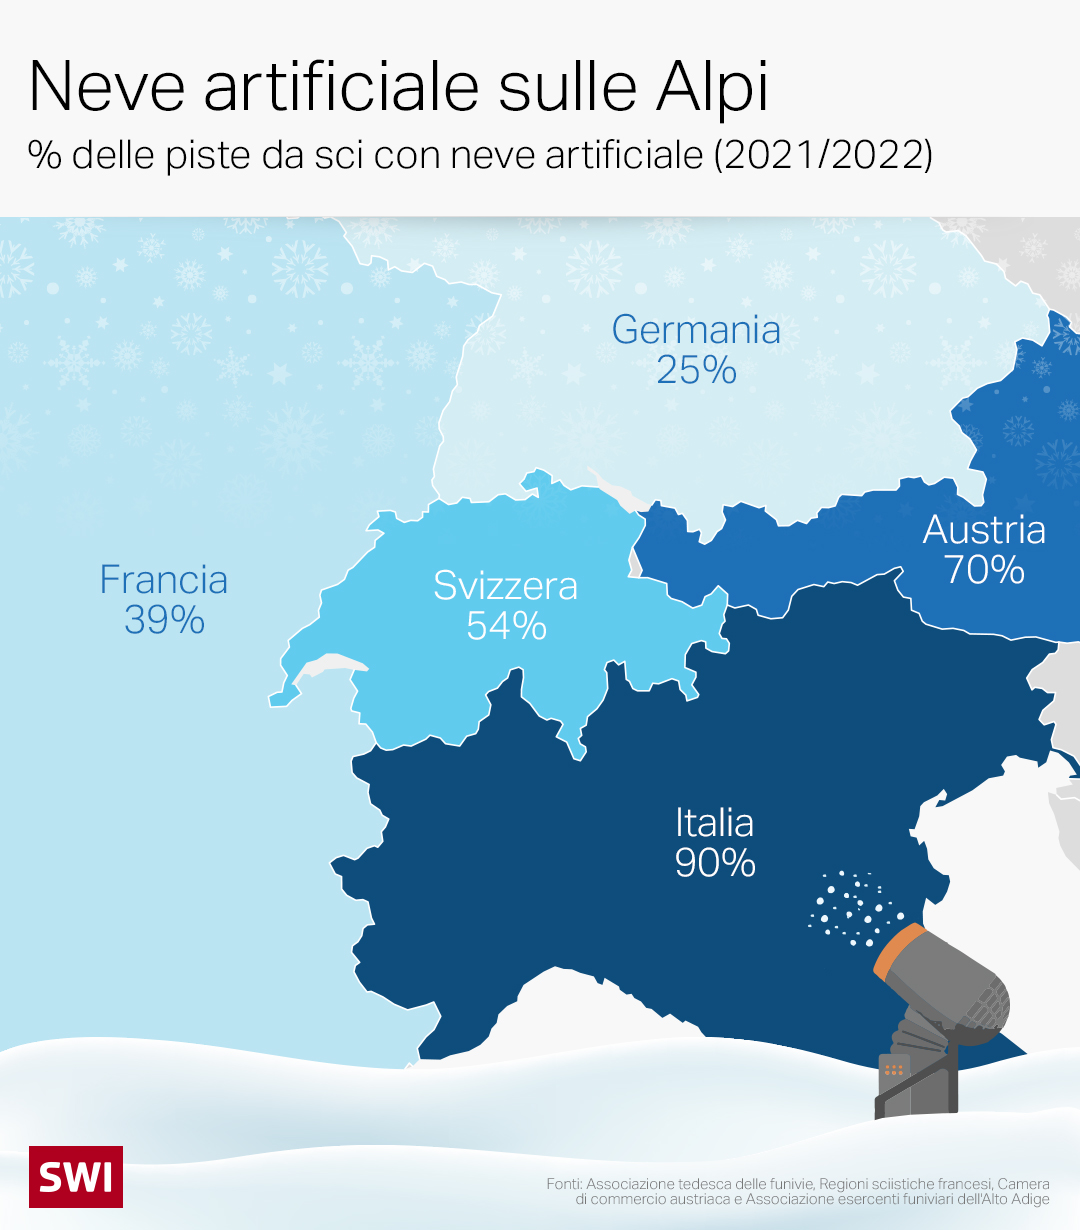 mappa dei paesi alpini che mostra la quota di piste da sci con neve artificiale in ogni paese